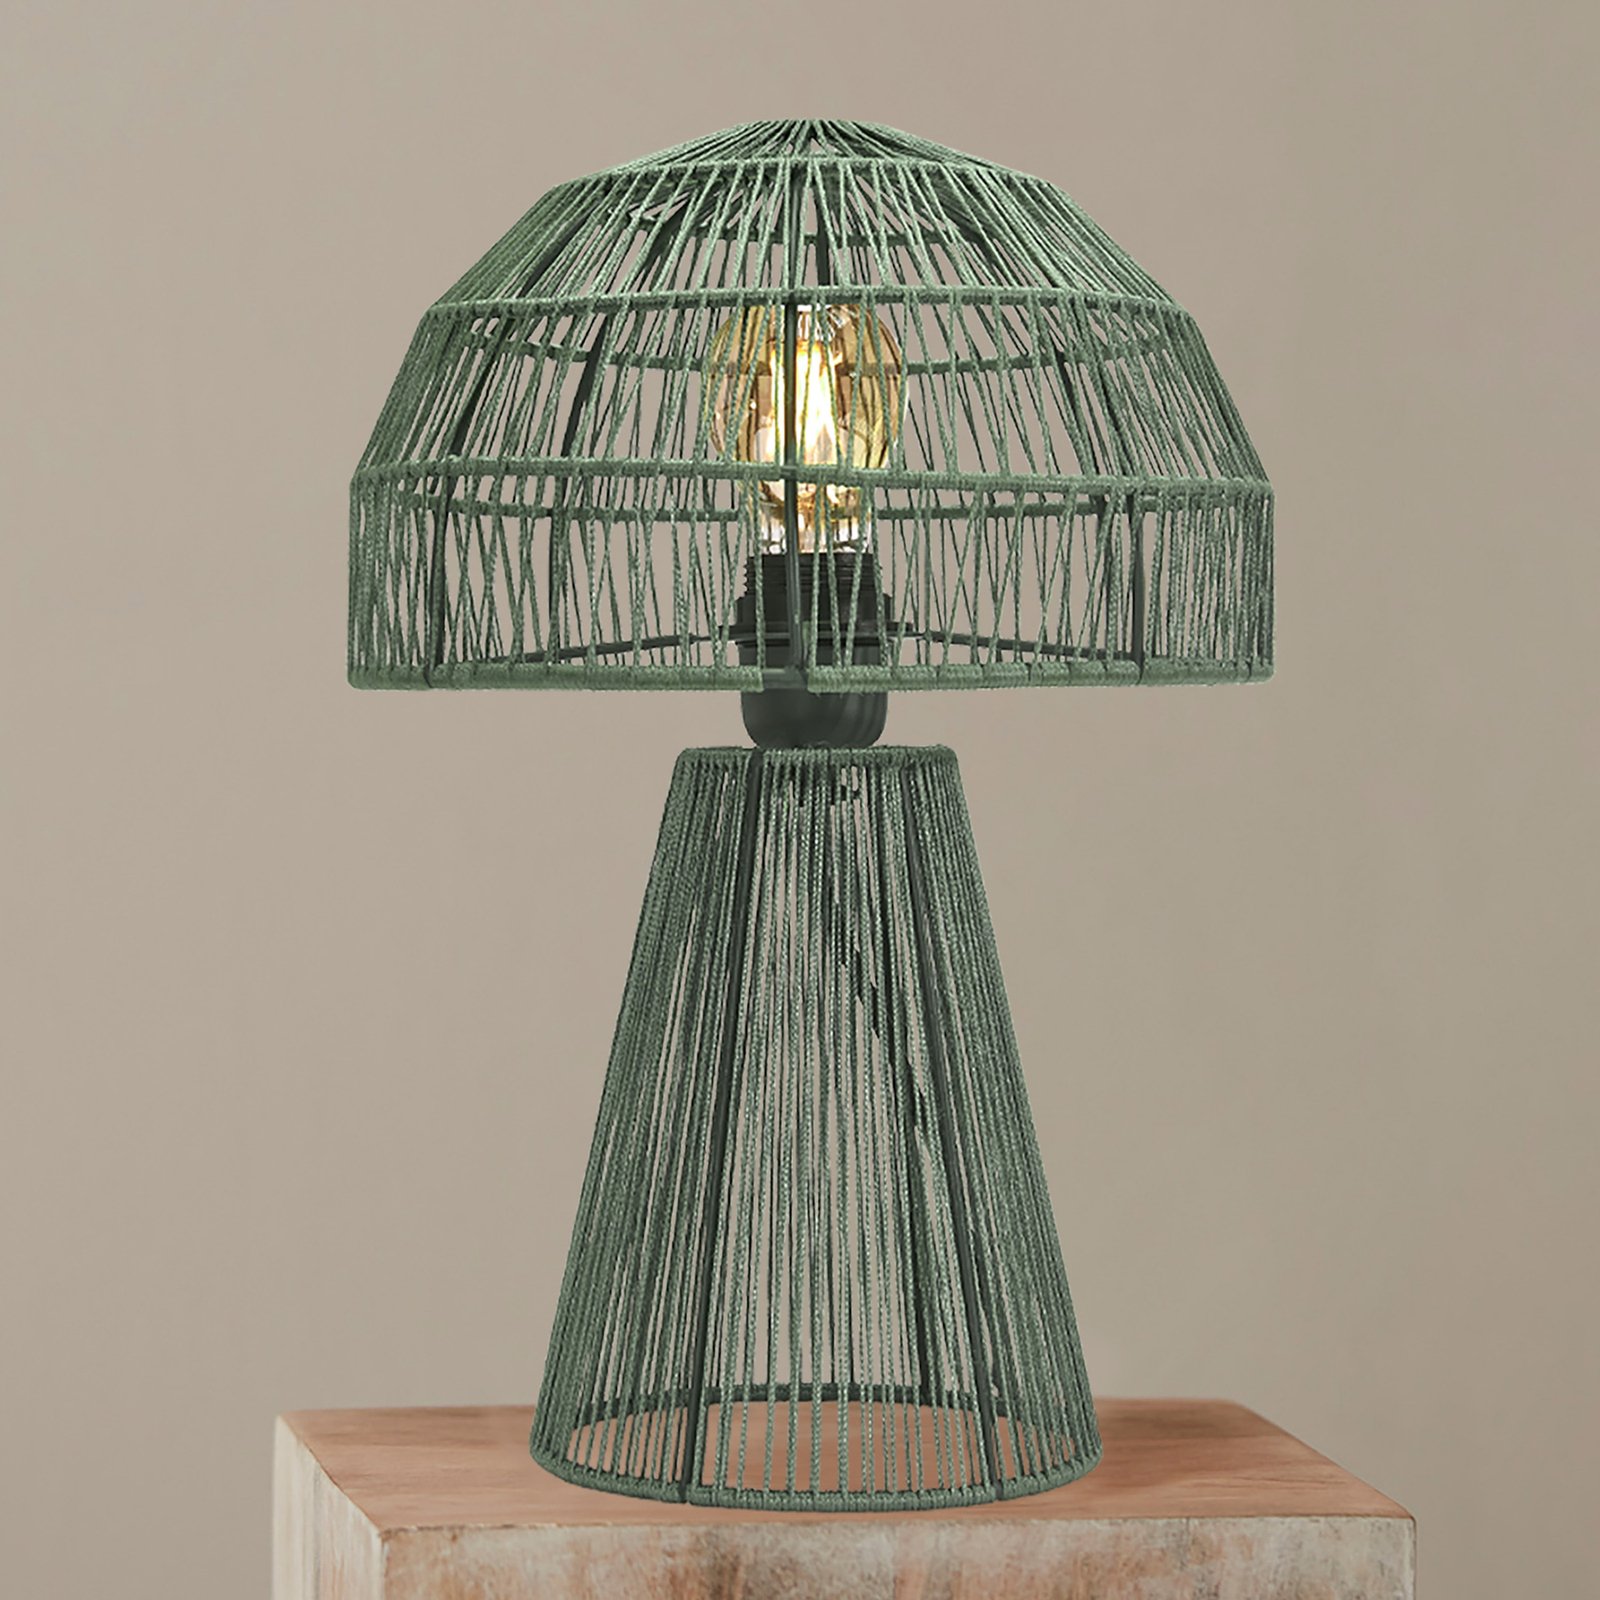 PR Home Porcini stolová lampa 37cm šalviová zelená